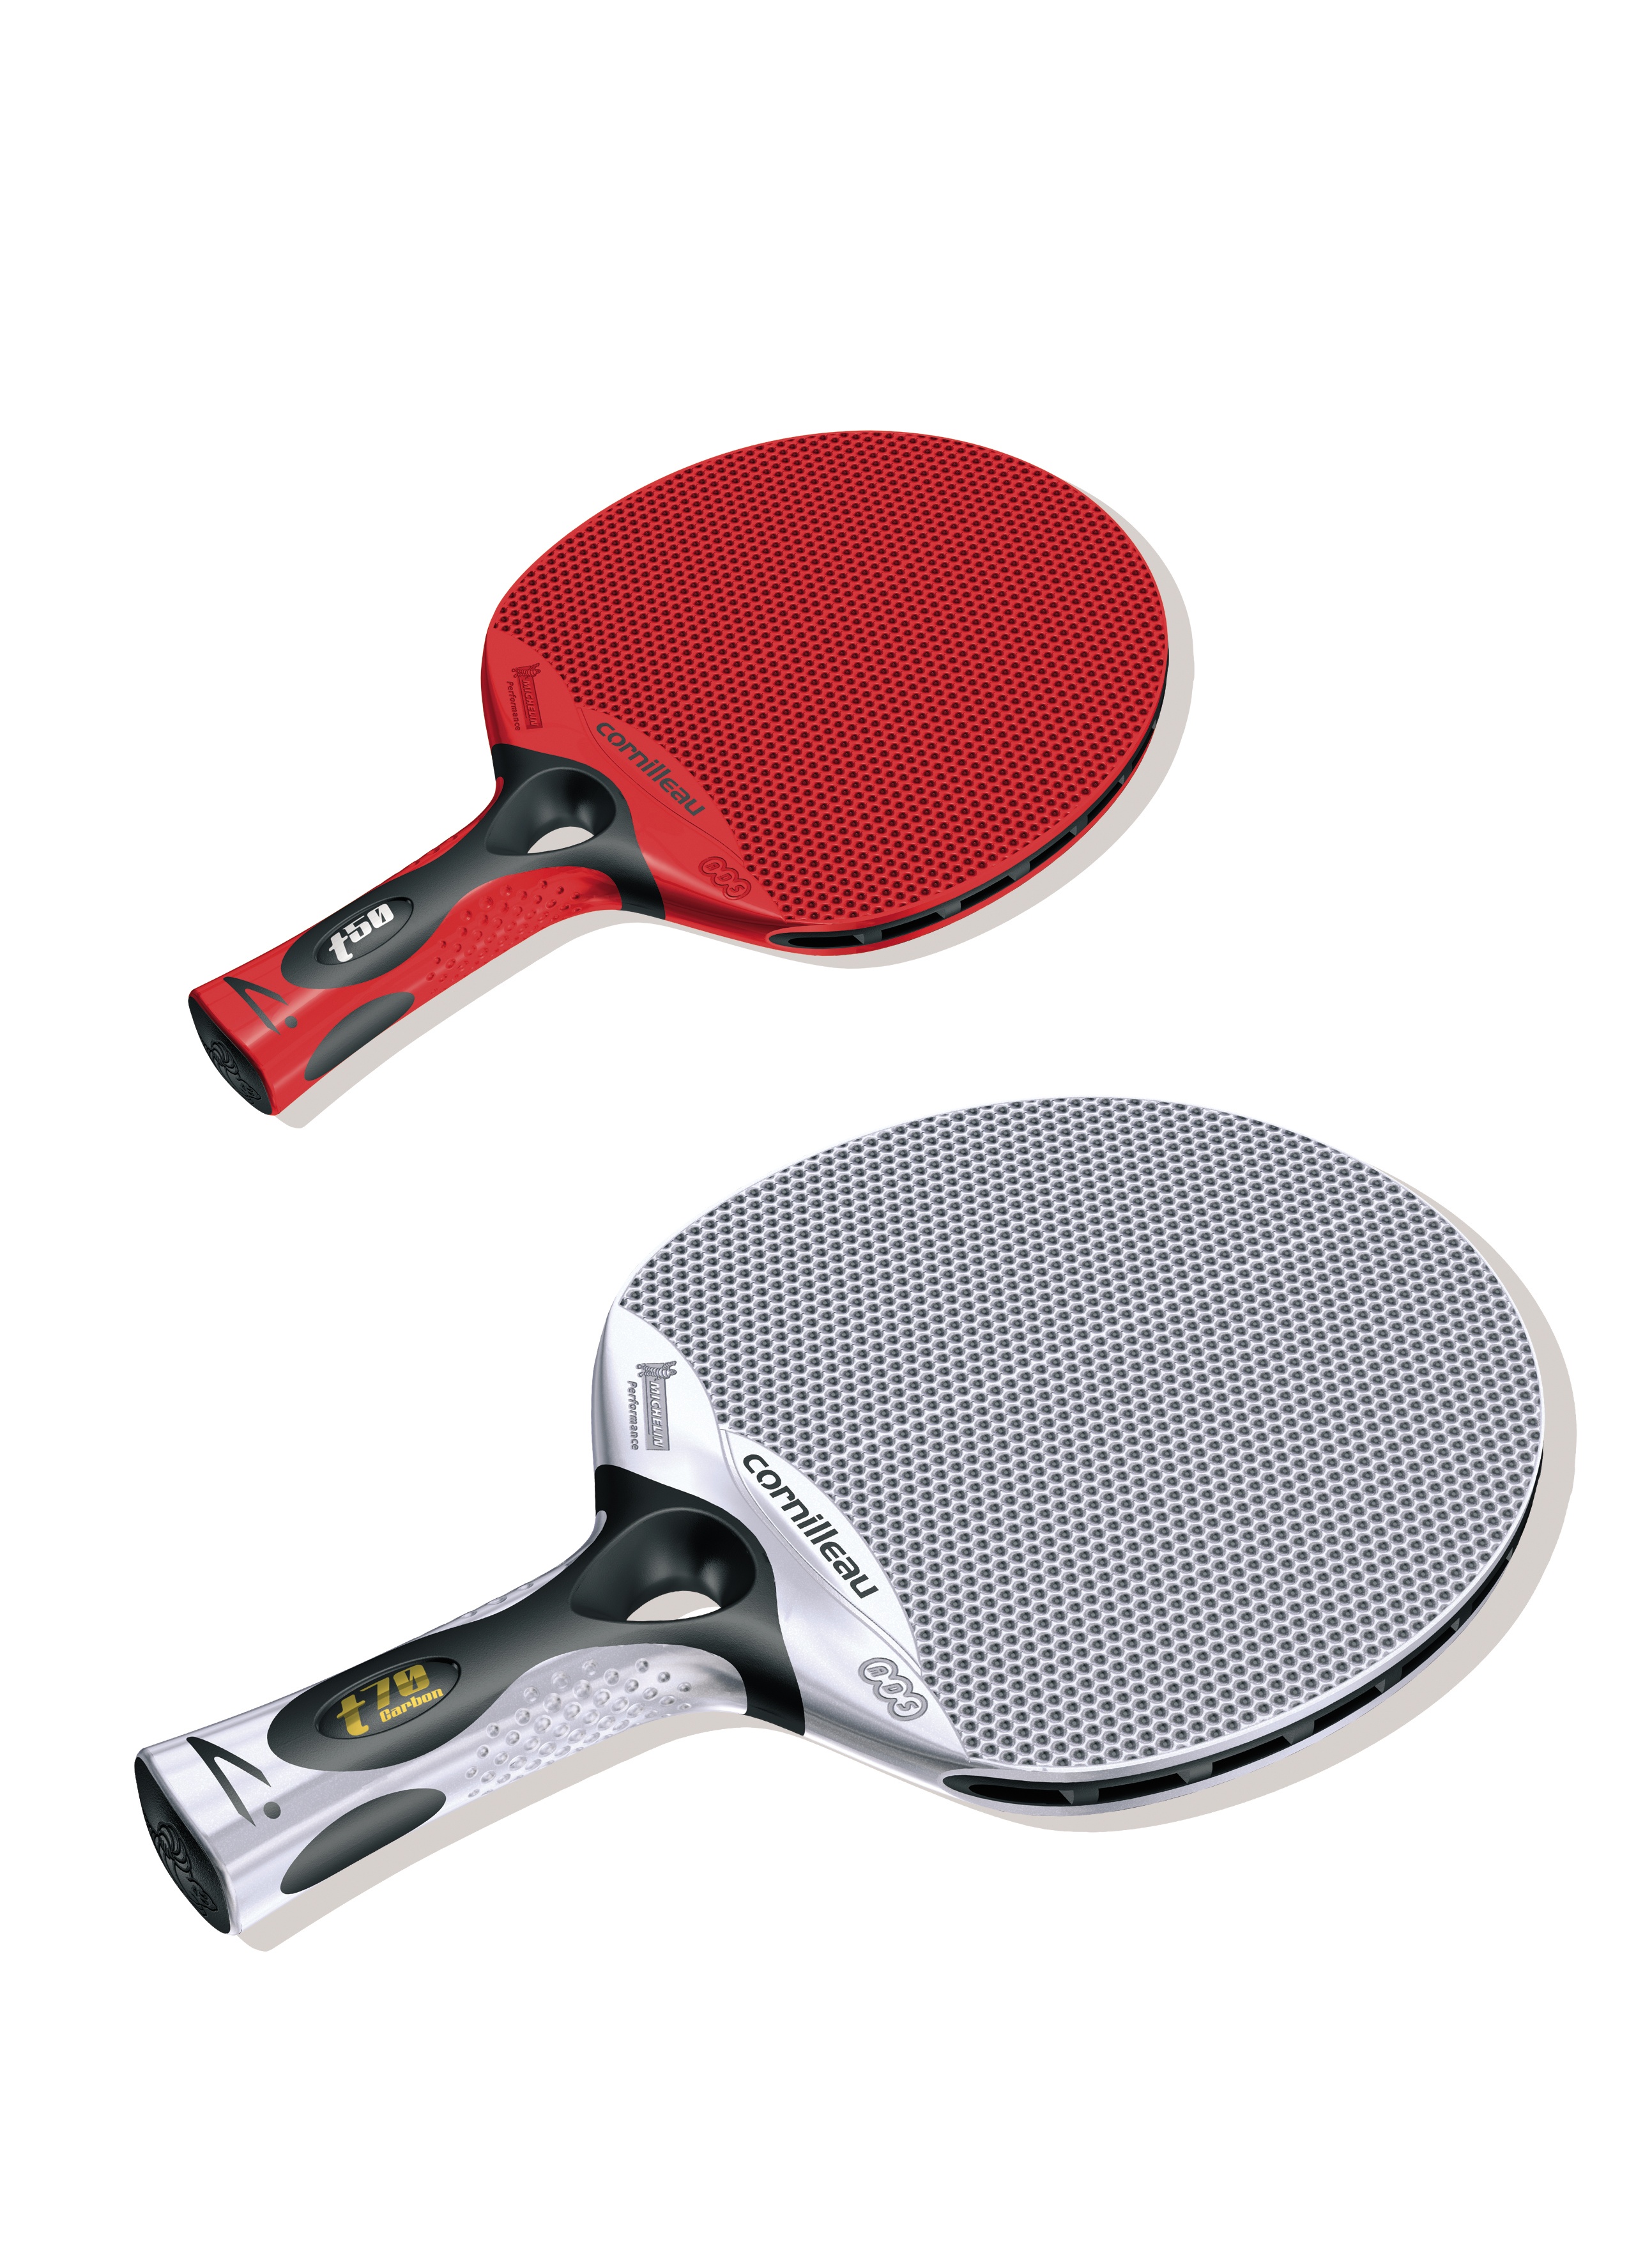 TACTEO-gamme de raquette de tennis de table